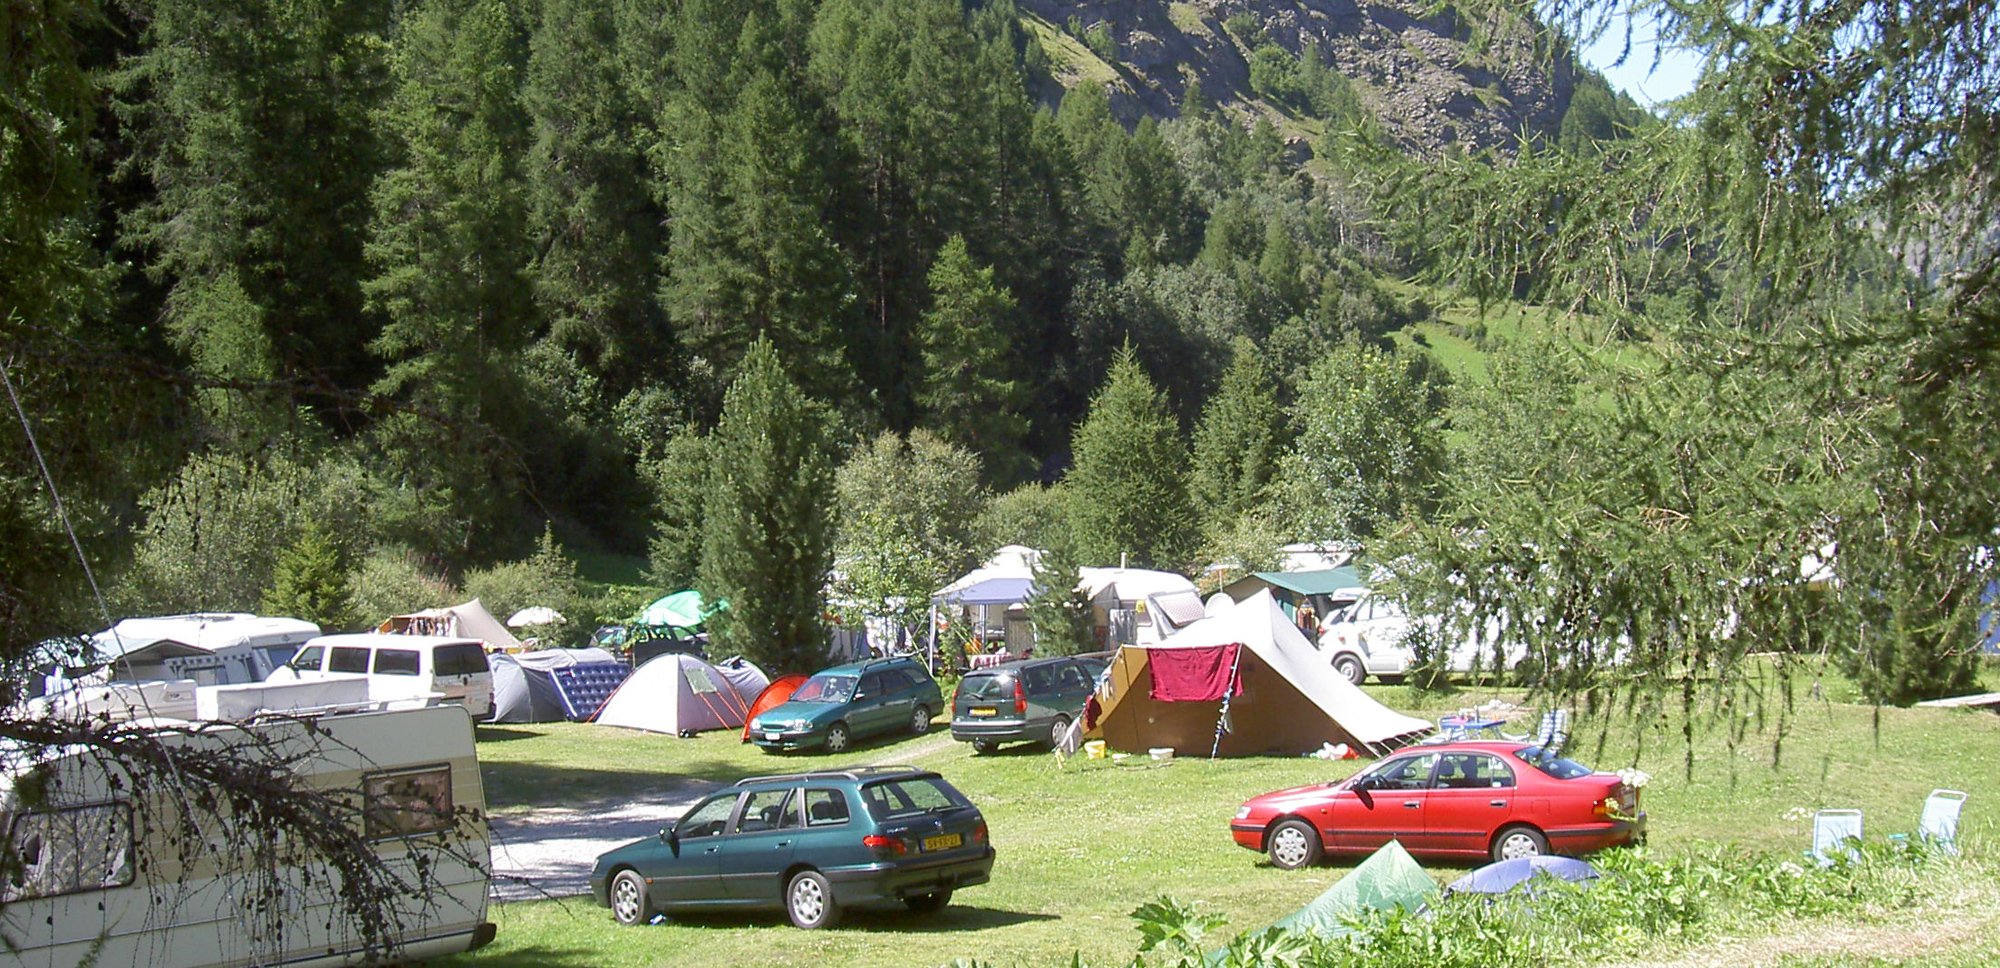 Emplacements de camping tente et voiture